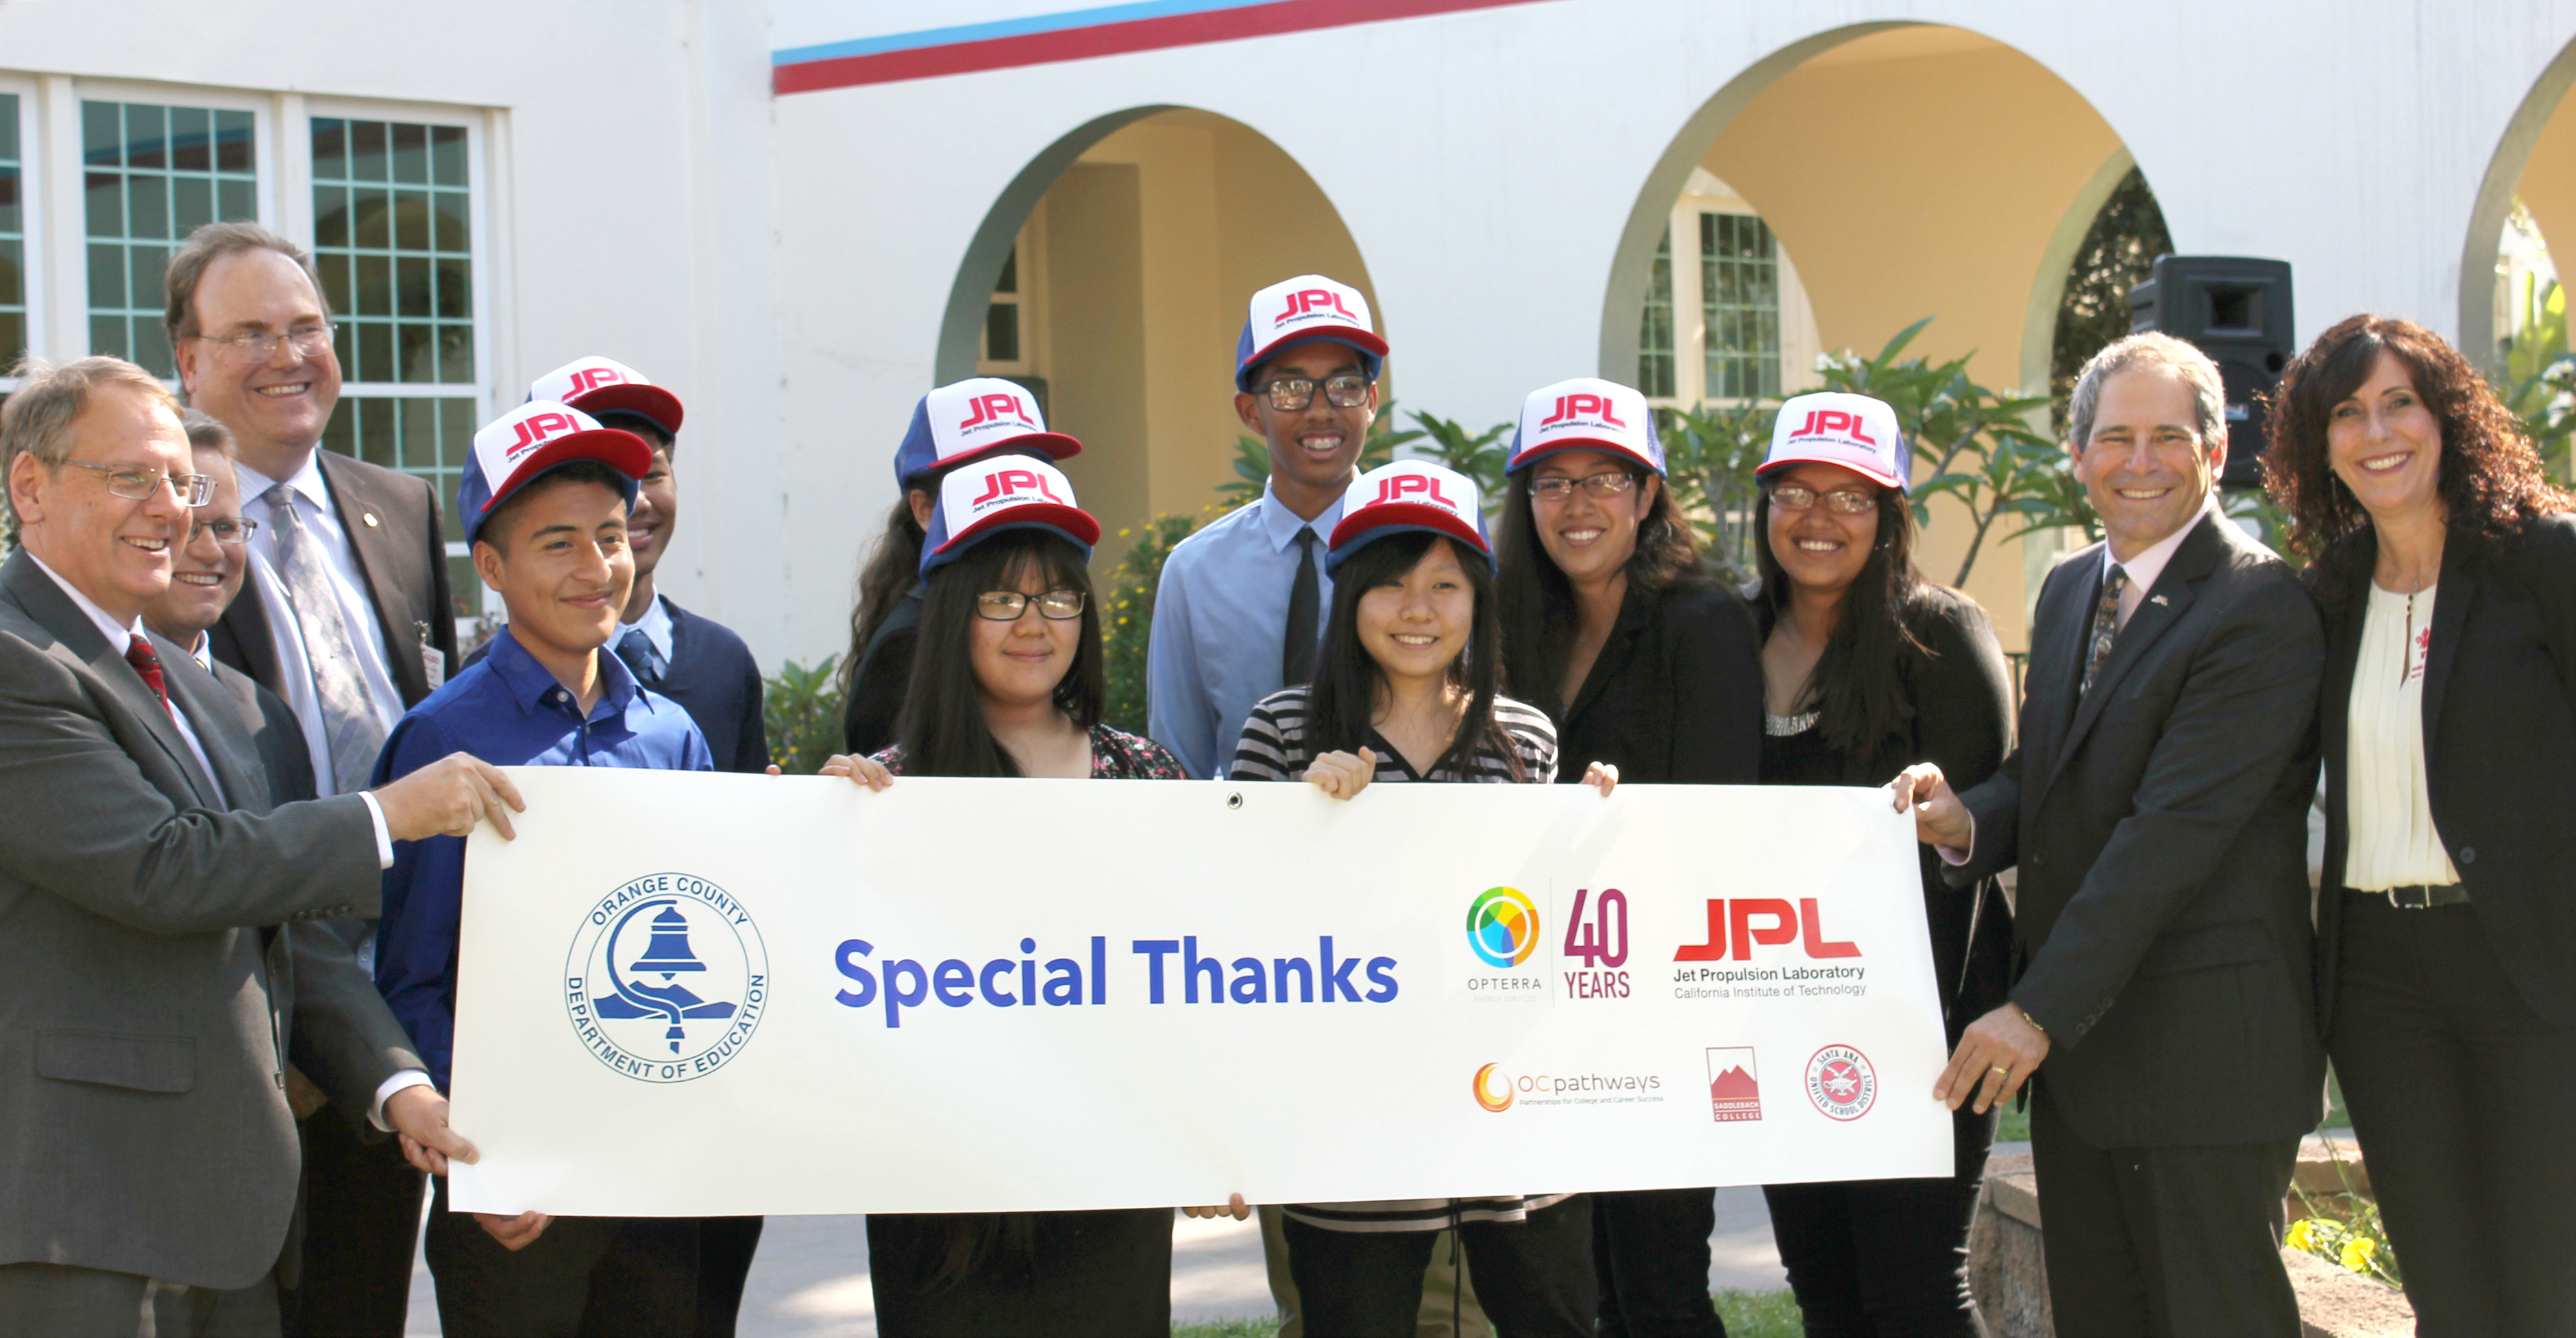 Santa Ana students wearing JPL hats